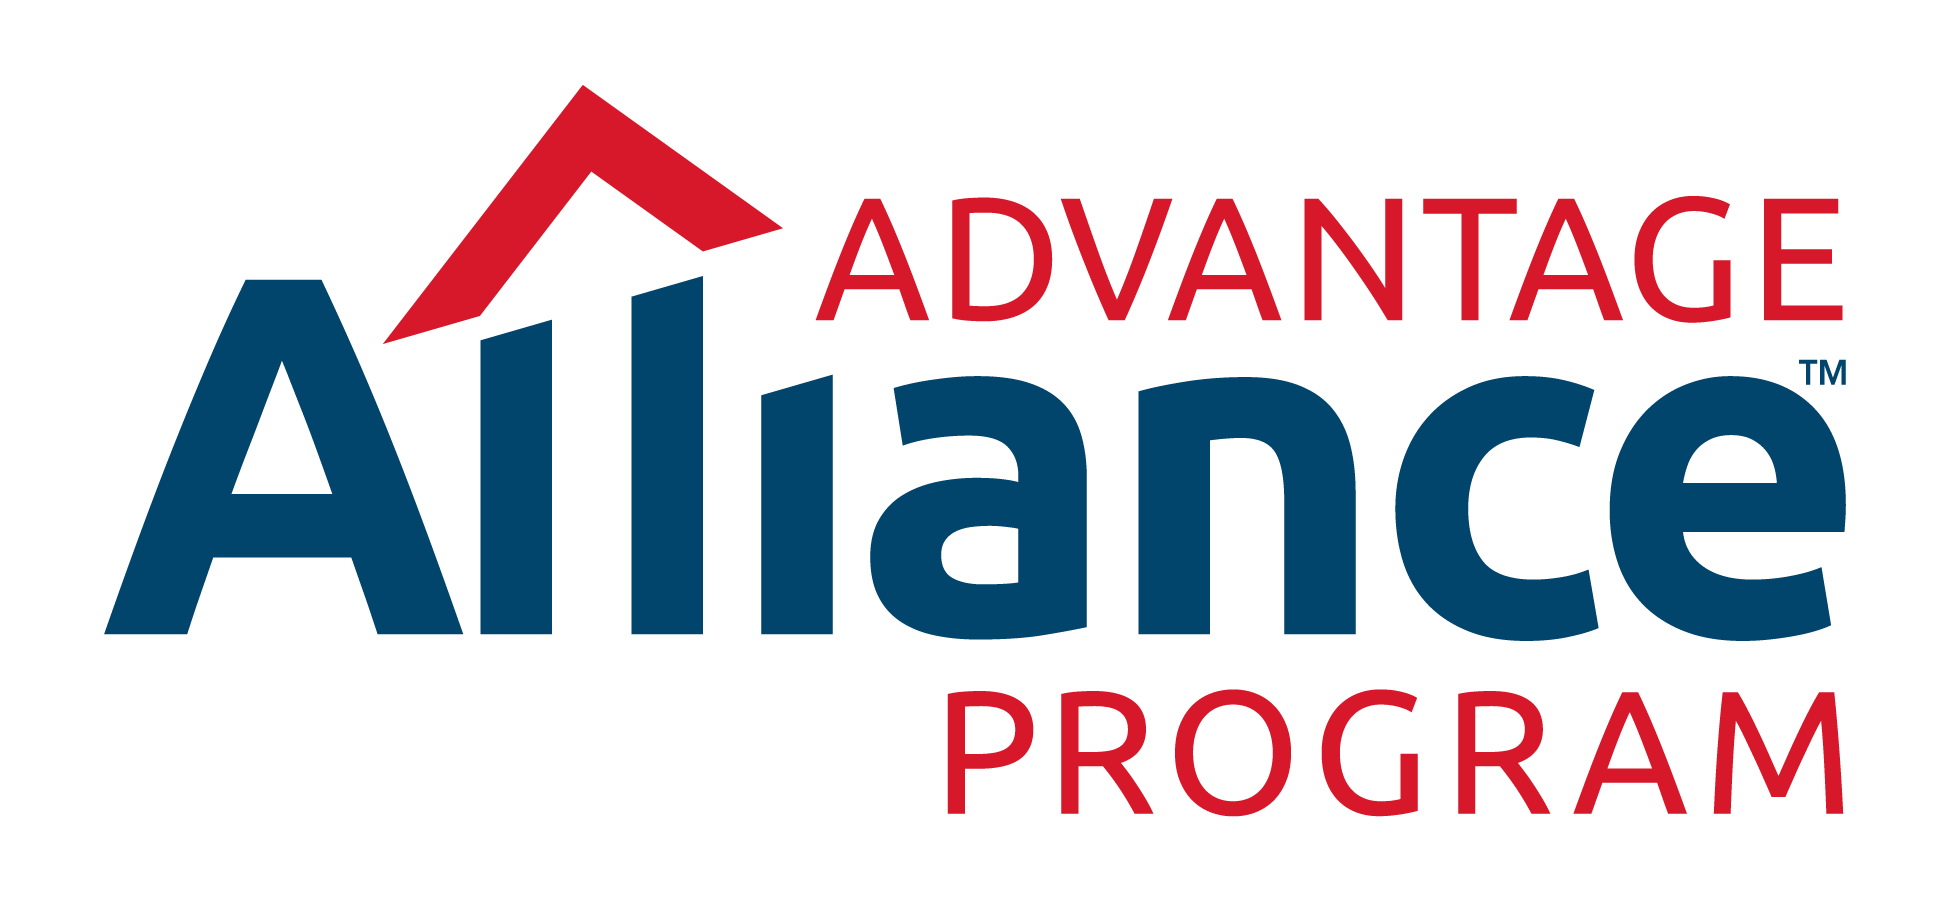 Advantage Alliance Program Color